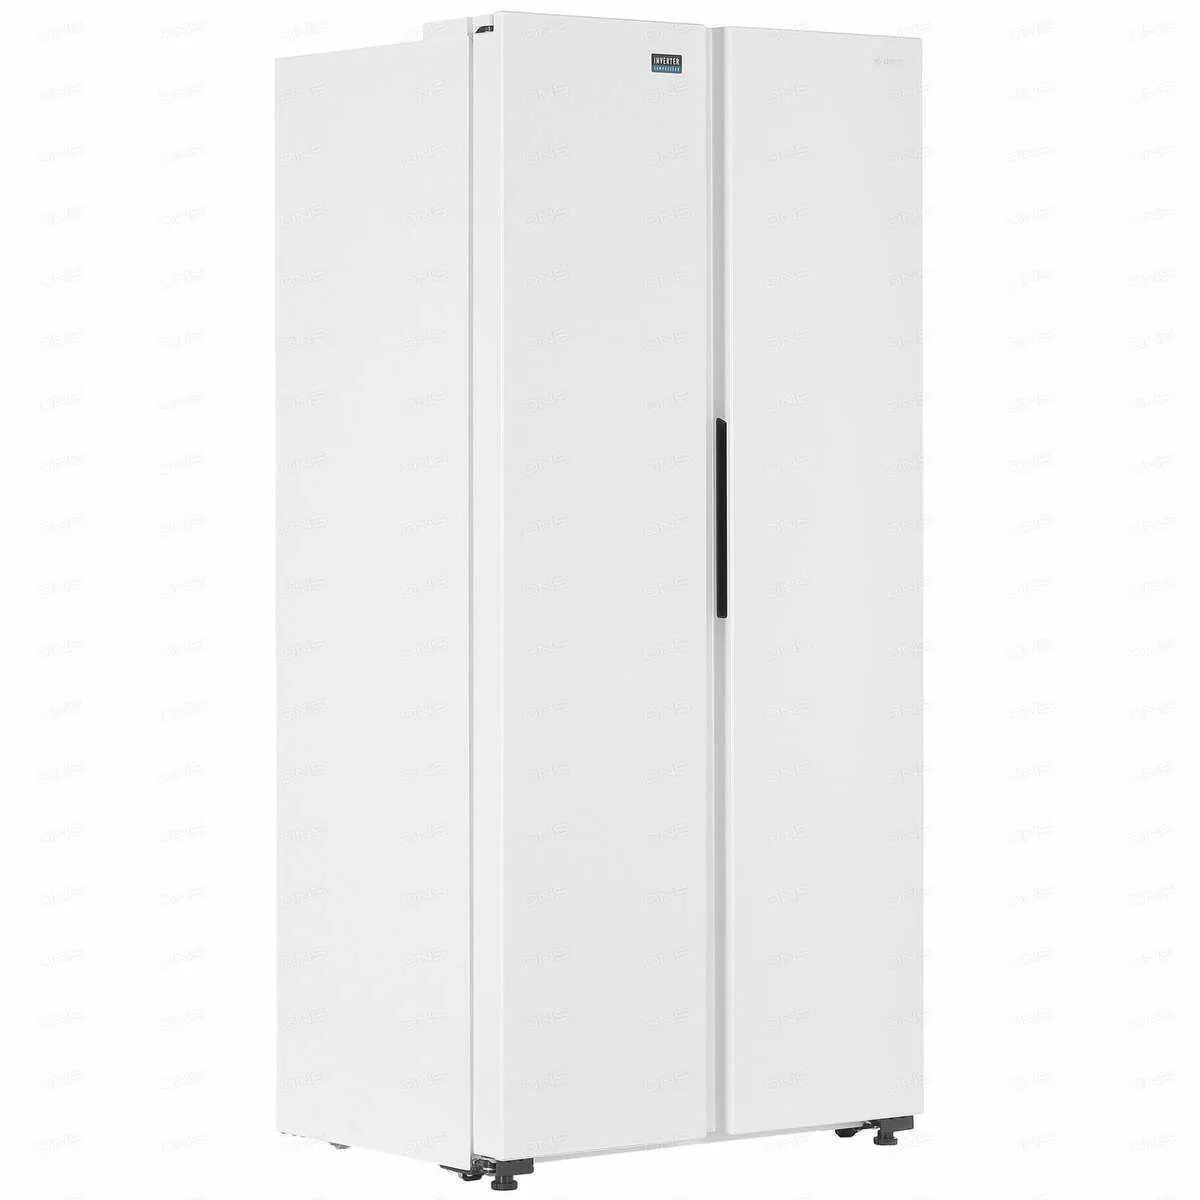 Холодильник Side by Side DEXP sbs440ama белый. Холодильник Side by Side DEXP sbs460amg серебристый. Холодильник Side by Side DEXP sbs455amg белый. Холодильник DEXP sbs440ama.